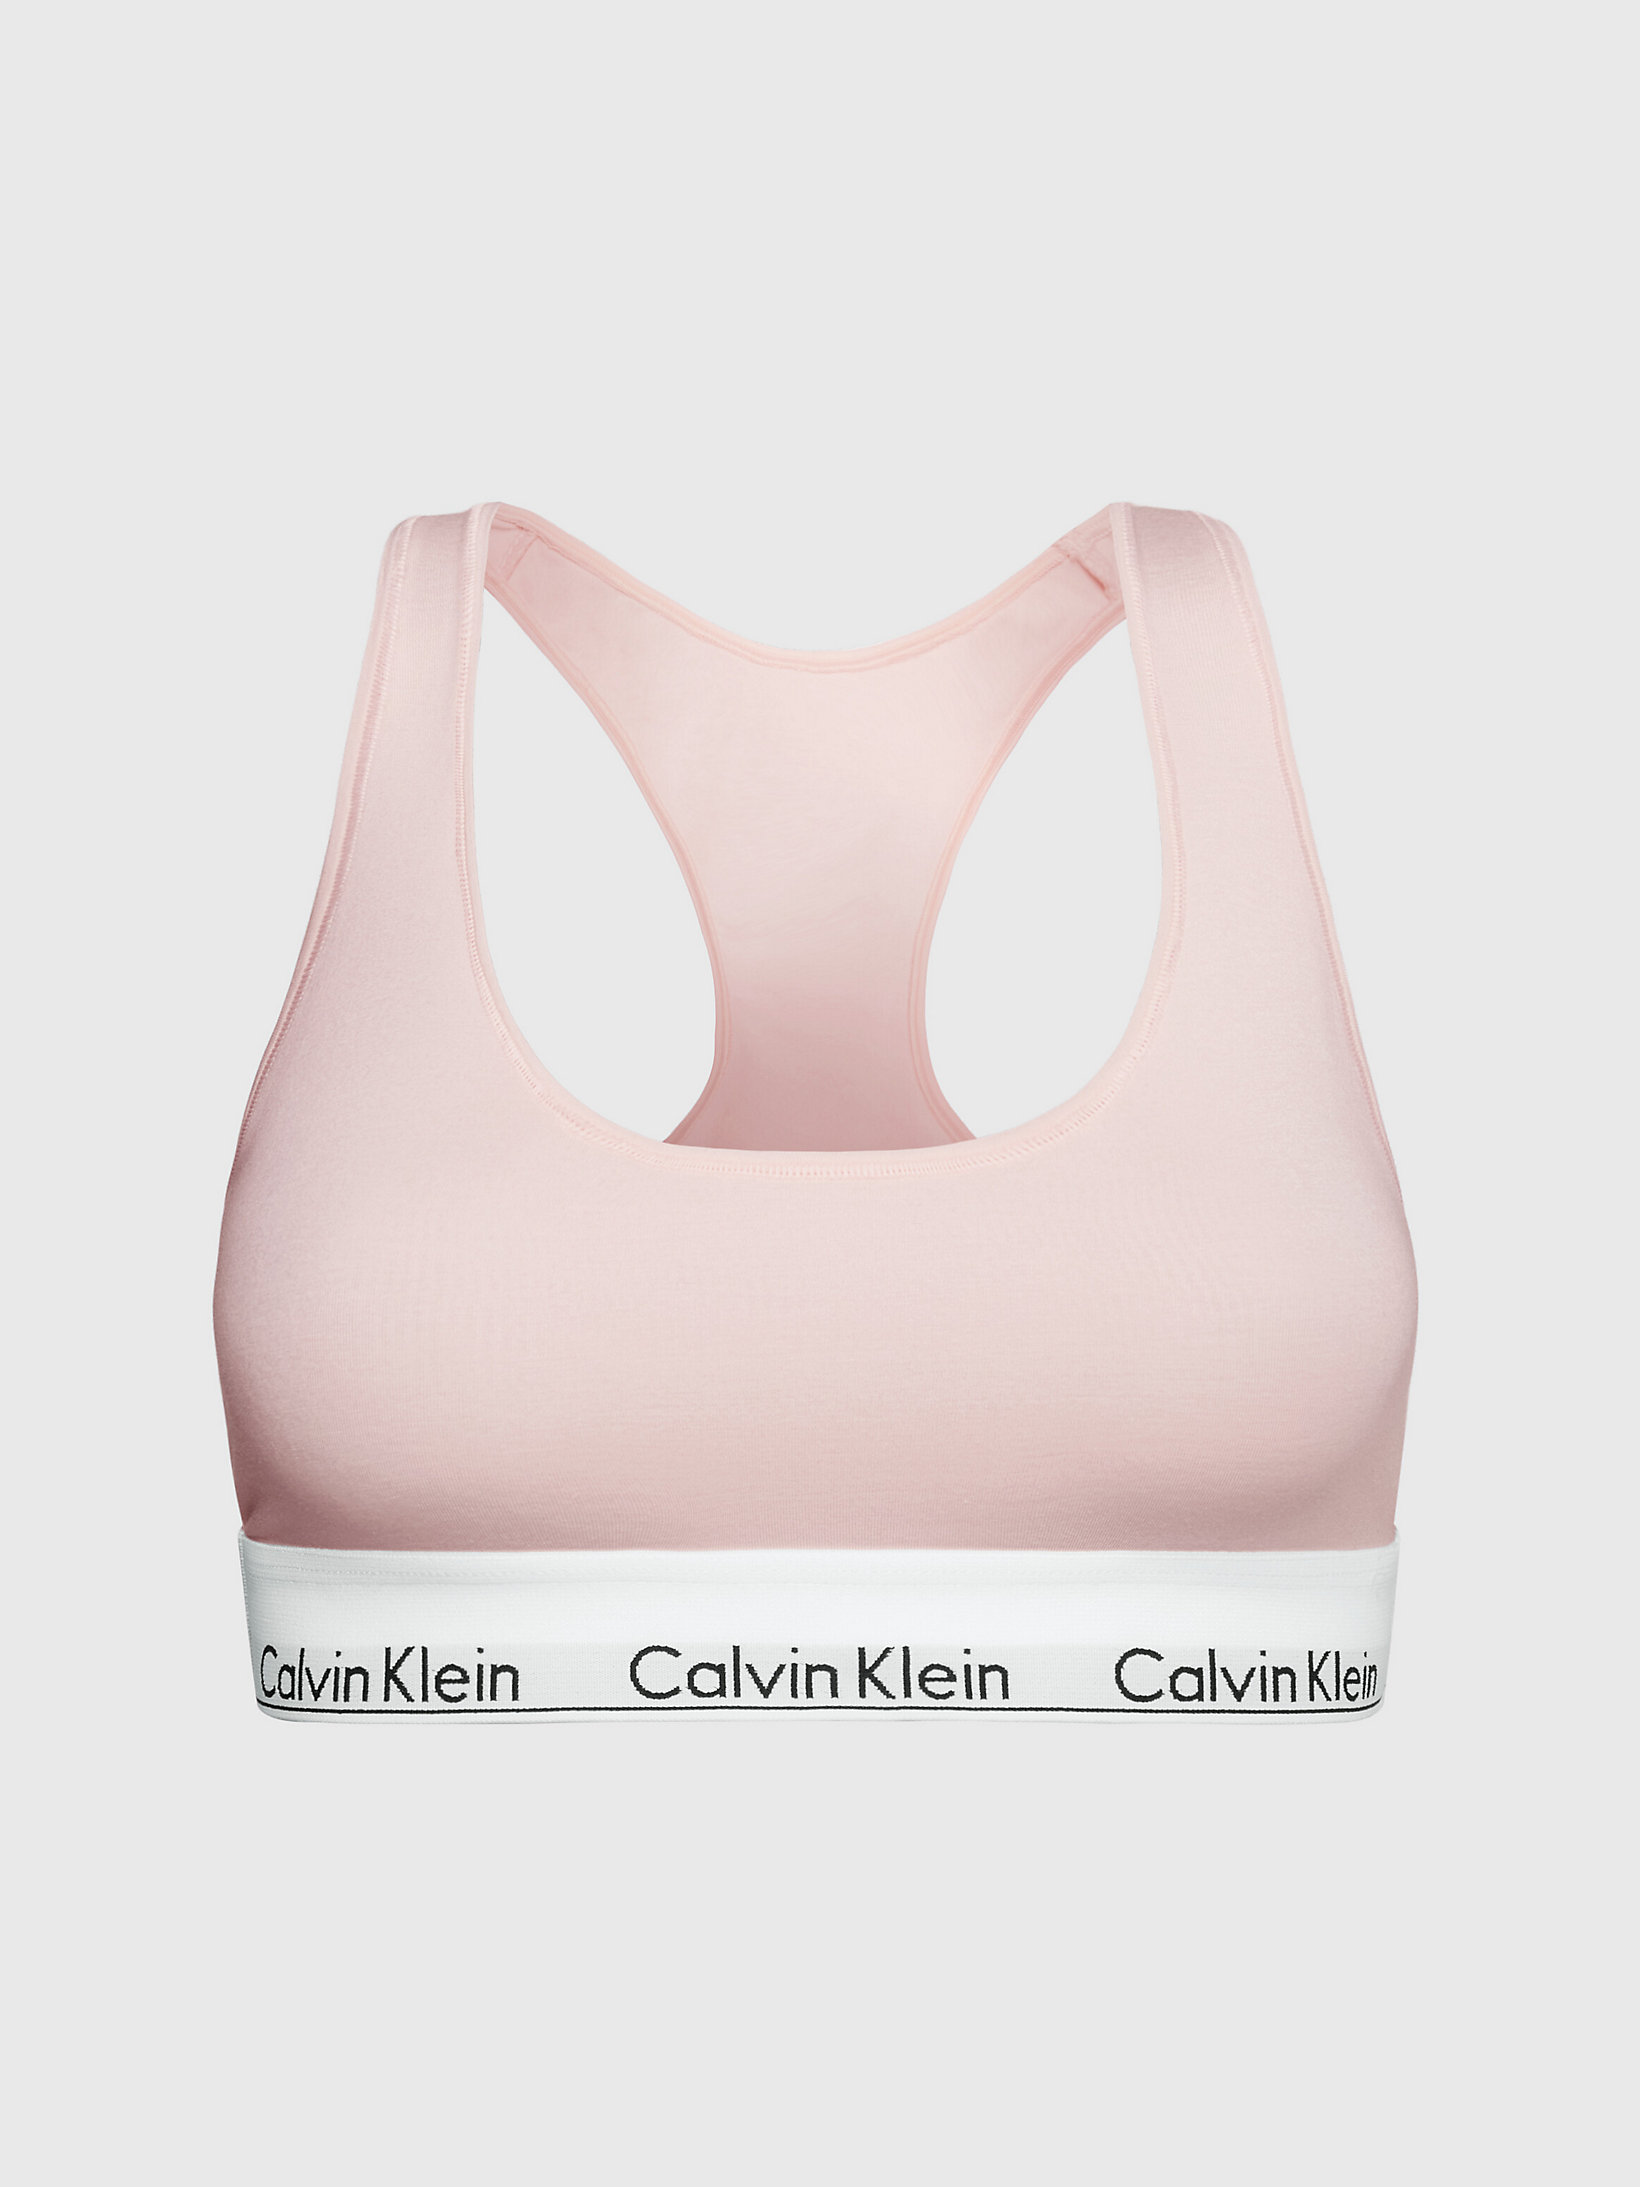 Nymphs Thigh Bralette - Modern Cotton undefined women Calvin Klein